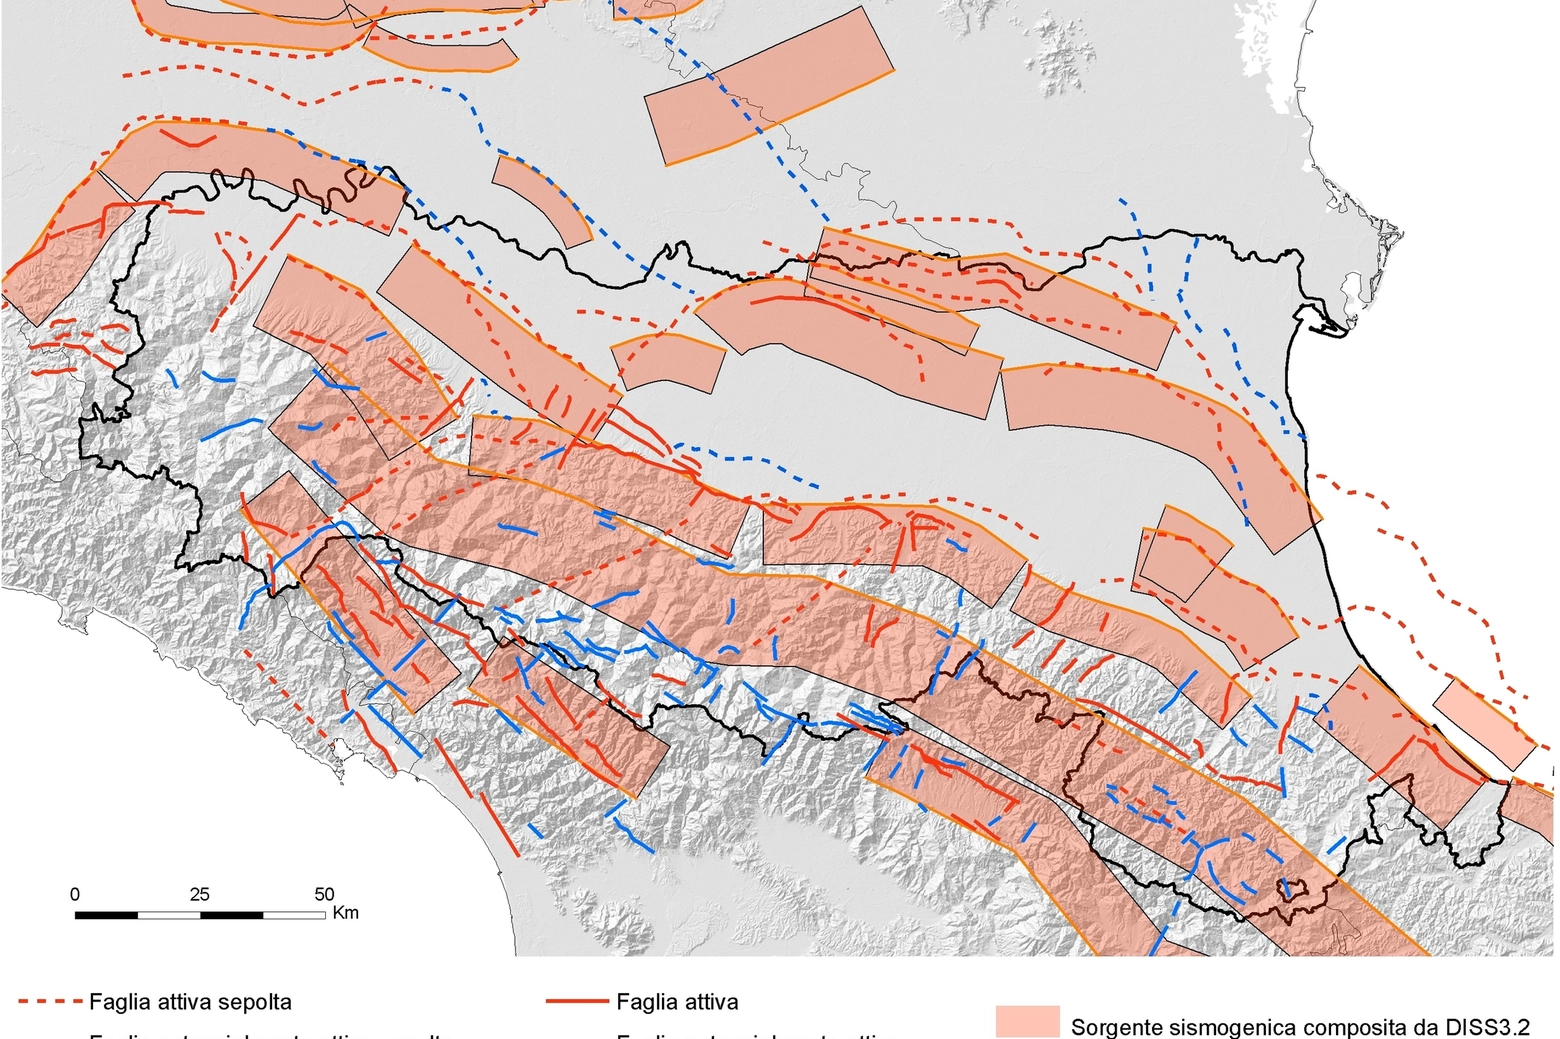 Le faglie in Emilia Romagna, o strutture sismogeniche che possono generare terremoti (immagine dal sito di Arpae)